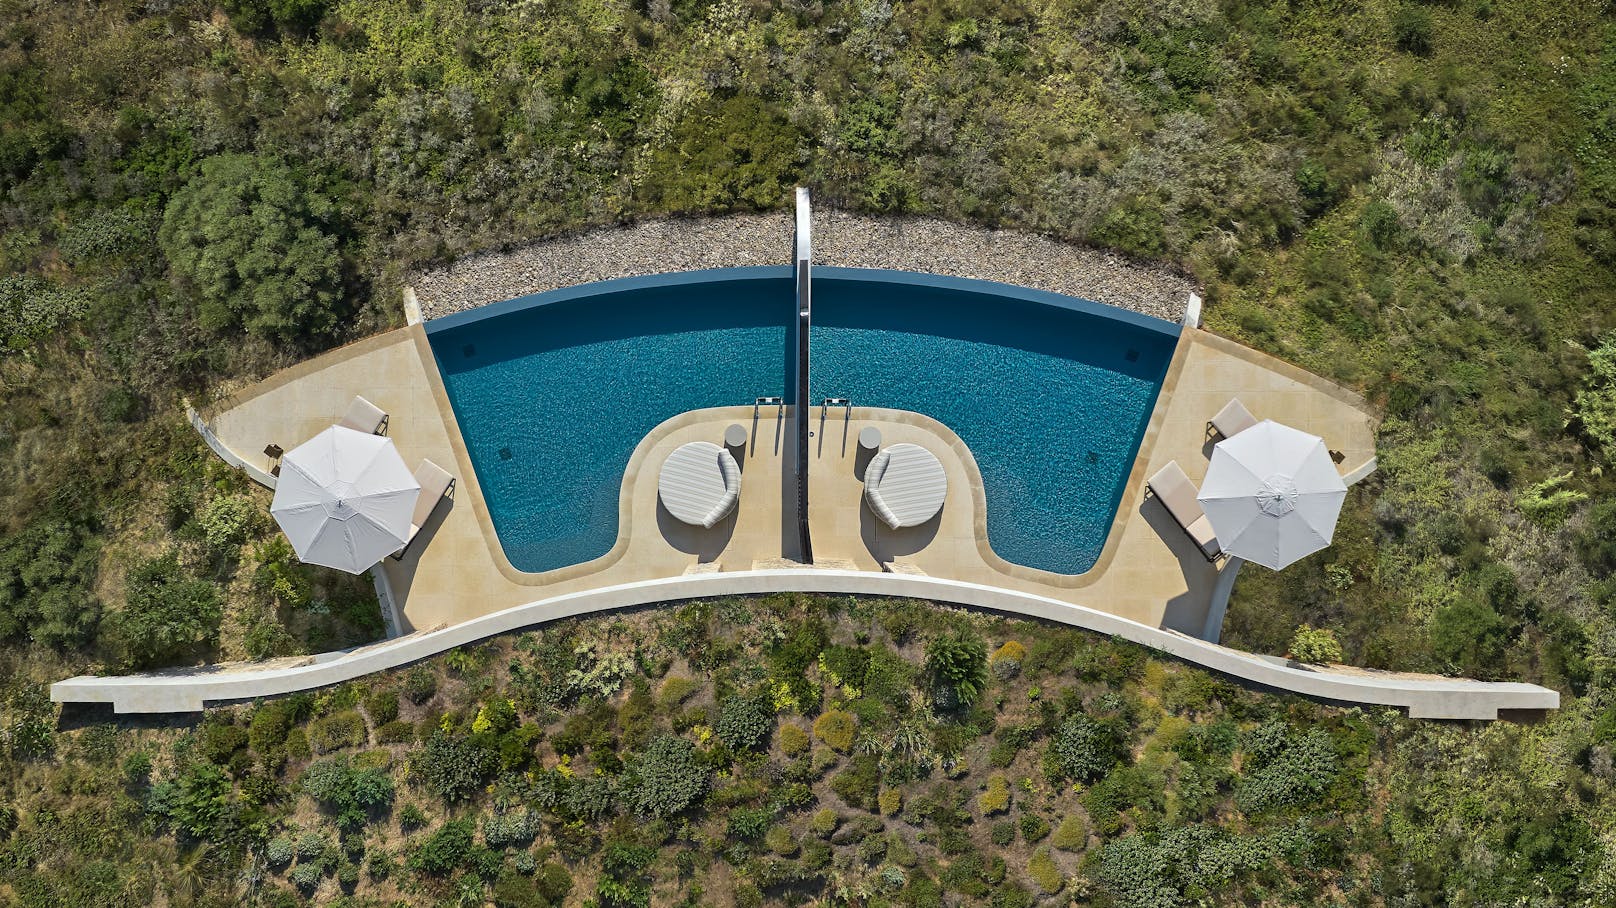 Mandarin Oriental hat ein neues Resort in Griechenland eröffnet. Die Villen "verschmelzen" dabei regelrecht mit der Landschaft.